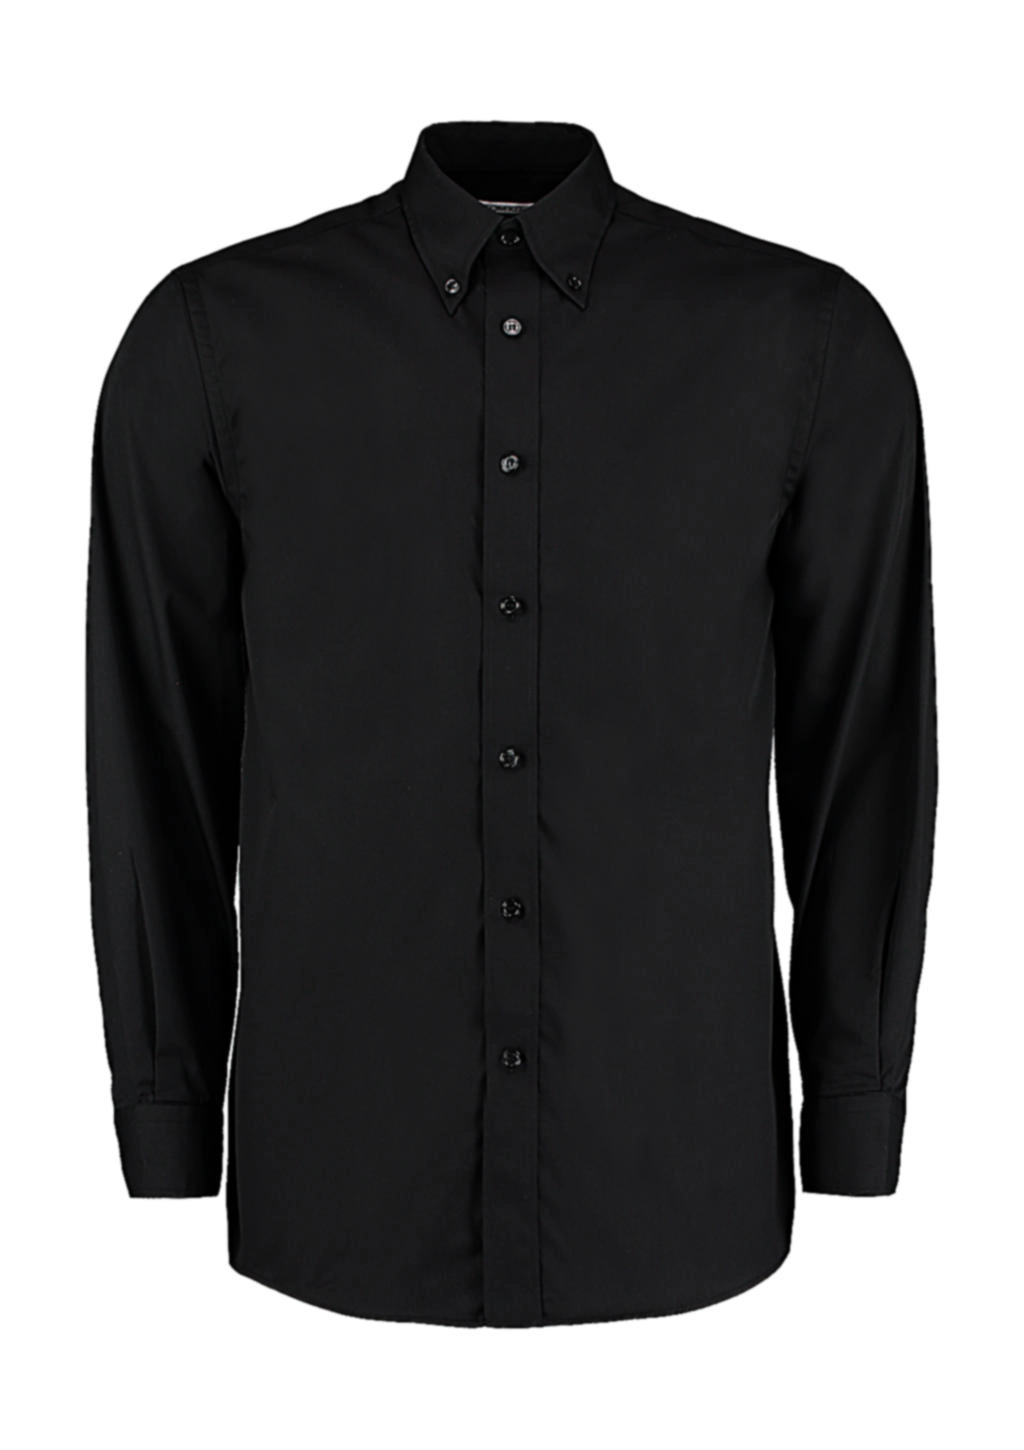 Tailored Fit Business Shirt zum Besticken und Bedrucken in der Farbe Black mit Ihren Logo, Schriftzug oder Motiv.